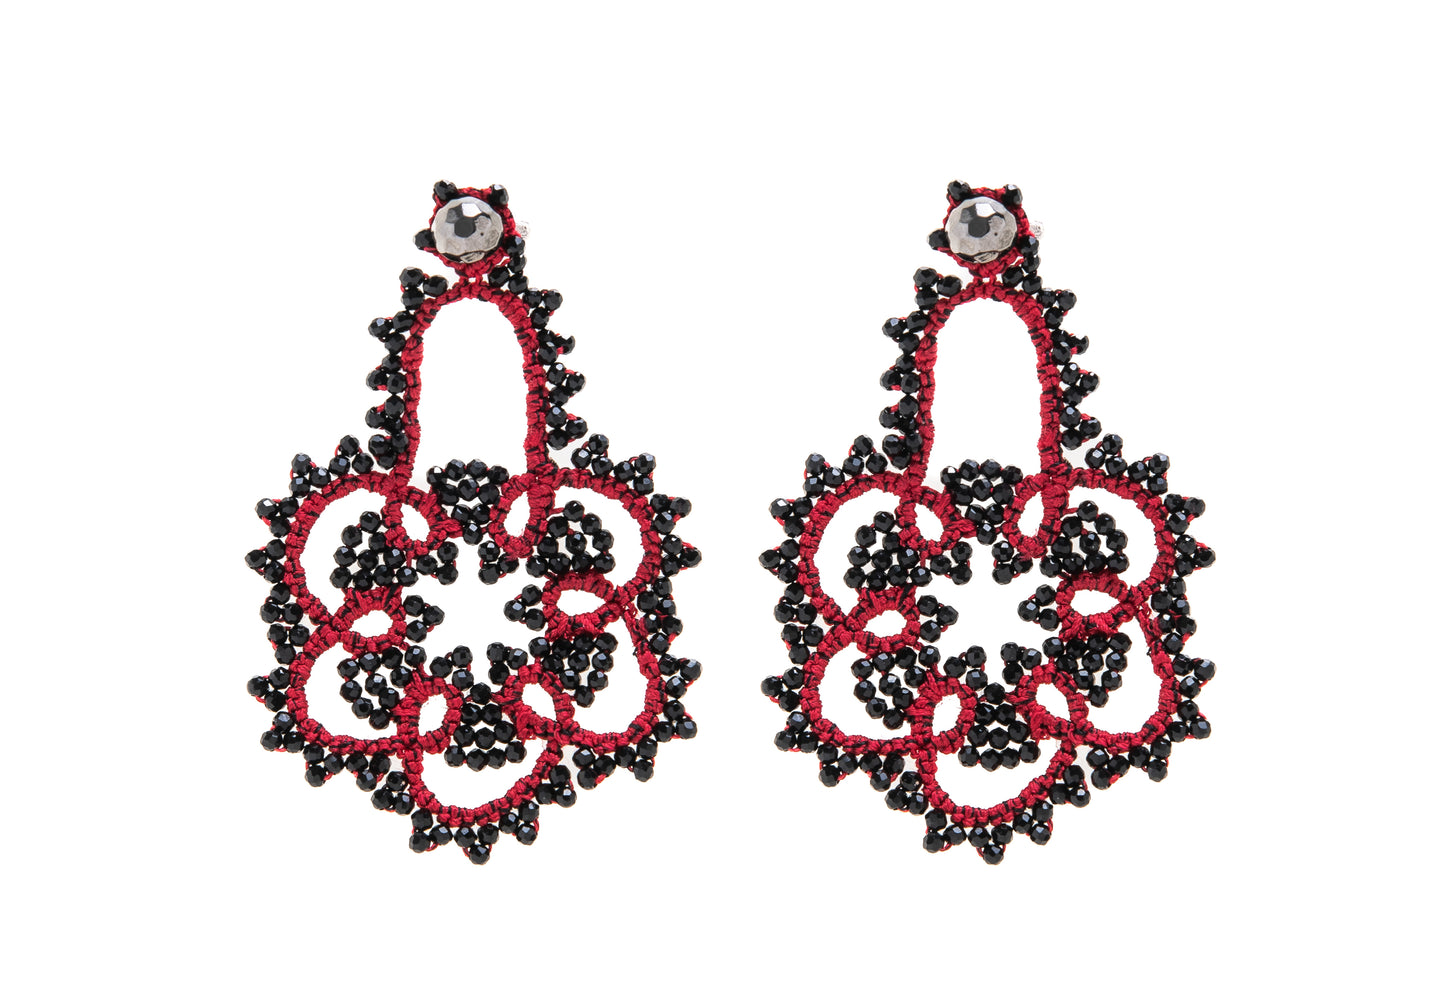 Flower lace earrings, festive red black